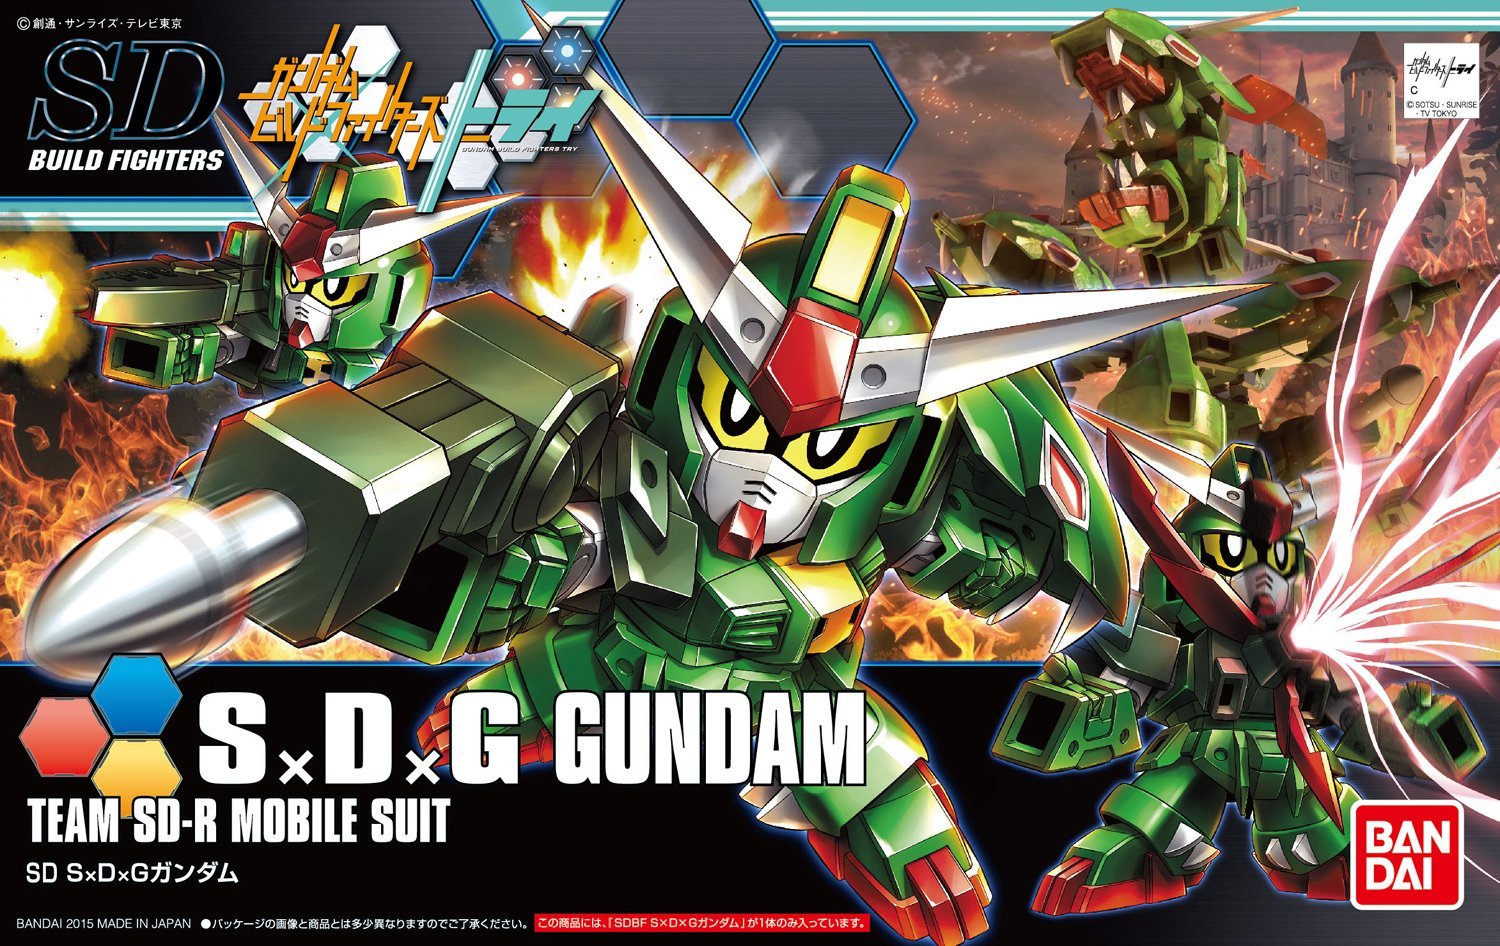 HGBF - S×D×G Gundam